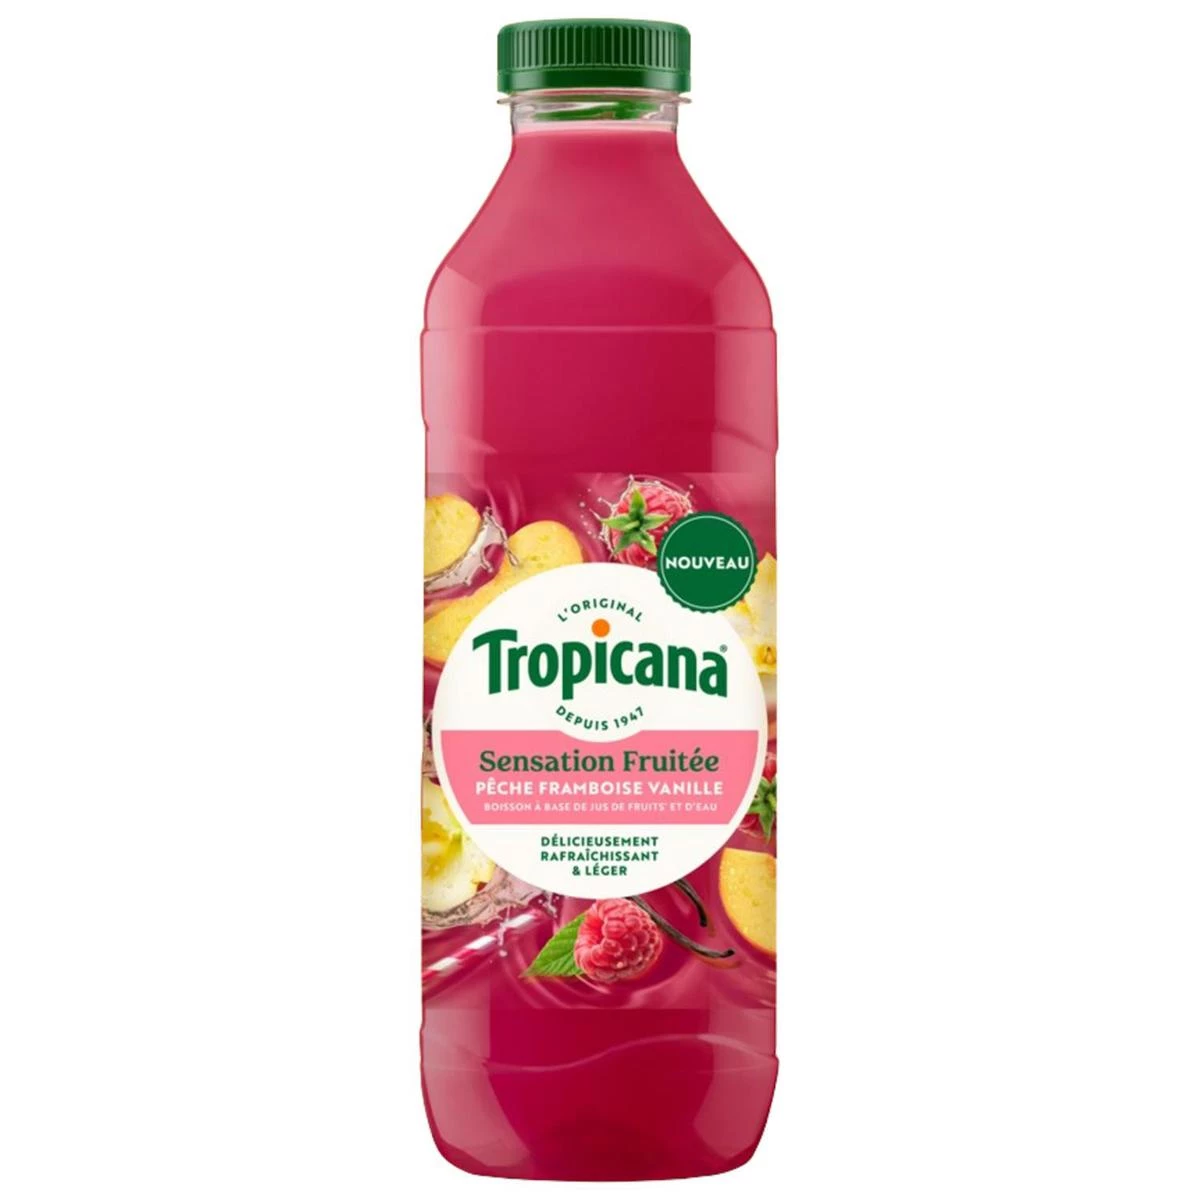 1л фруктового напитка Tropicana Sensation